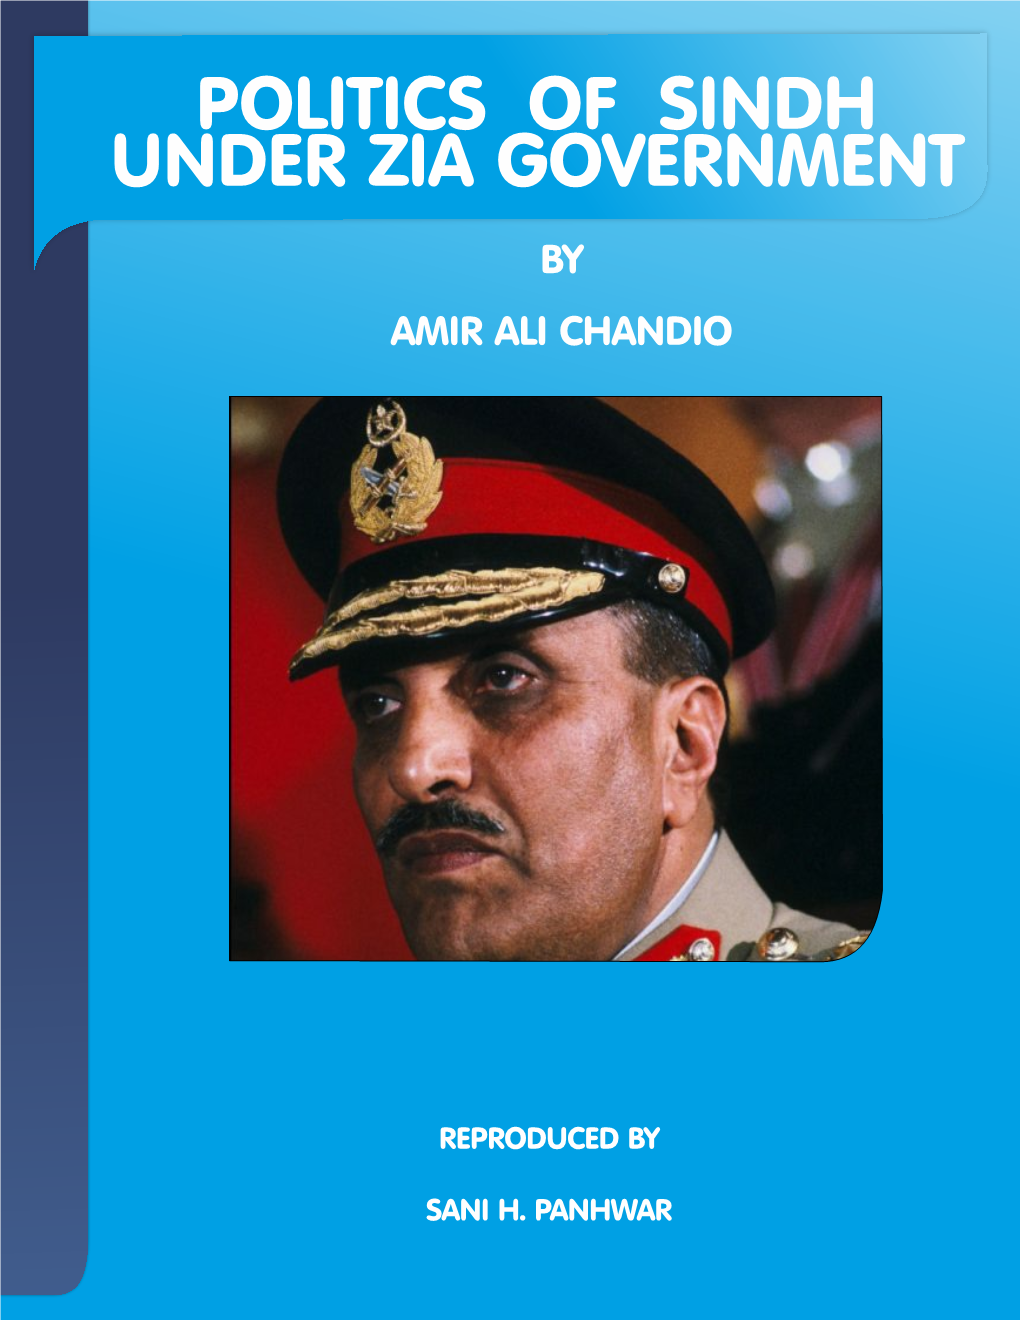 Politics of Sindh Under Zia Government by Amir Ali Chandio